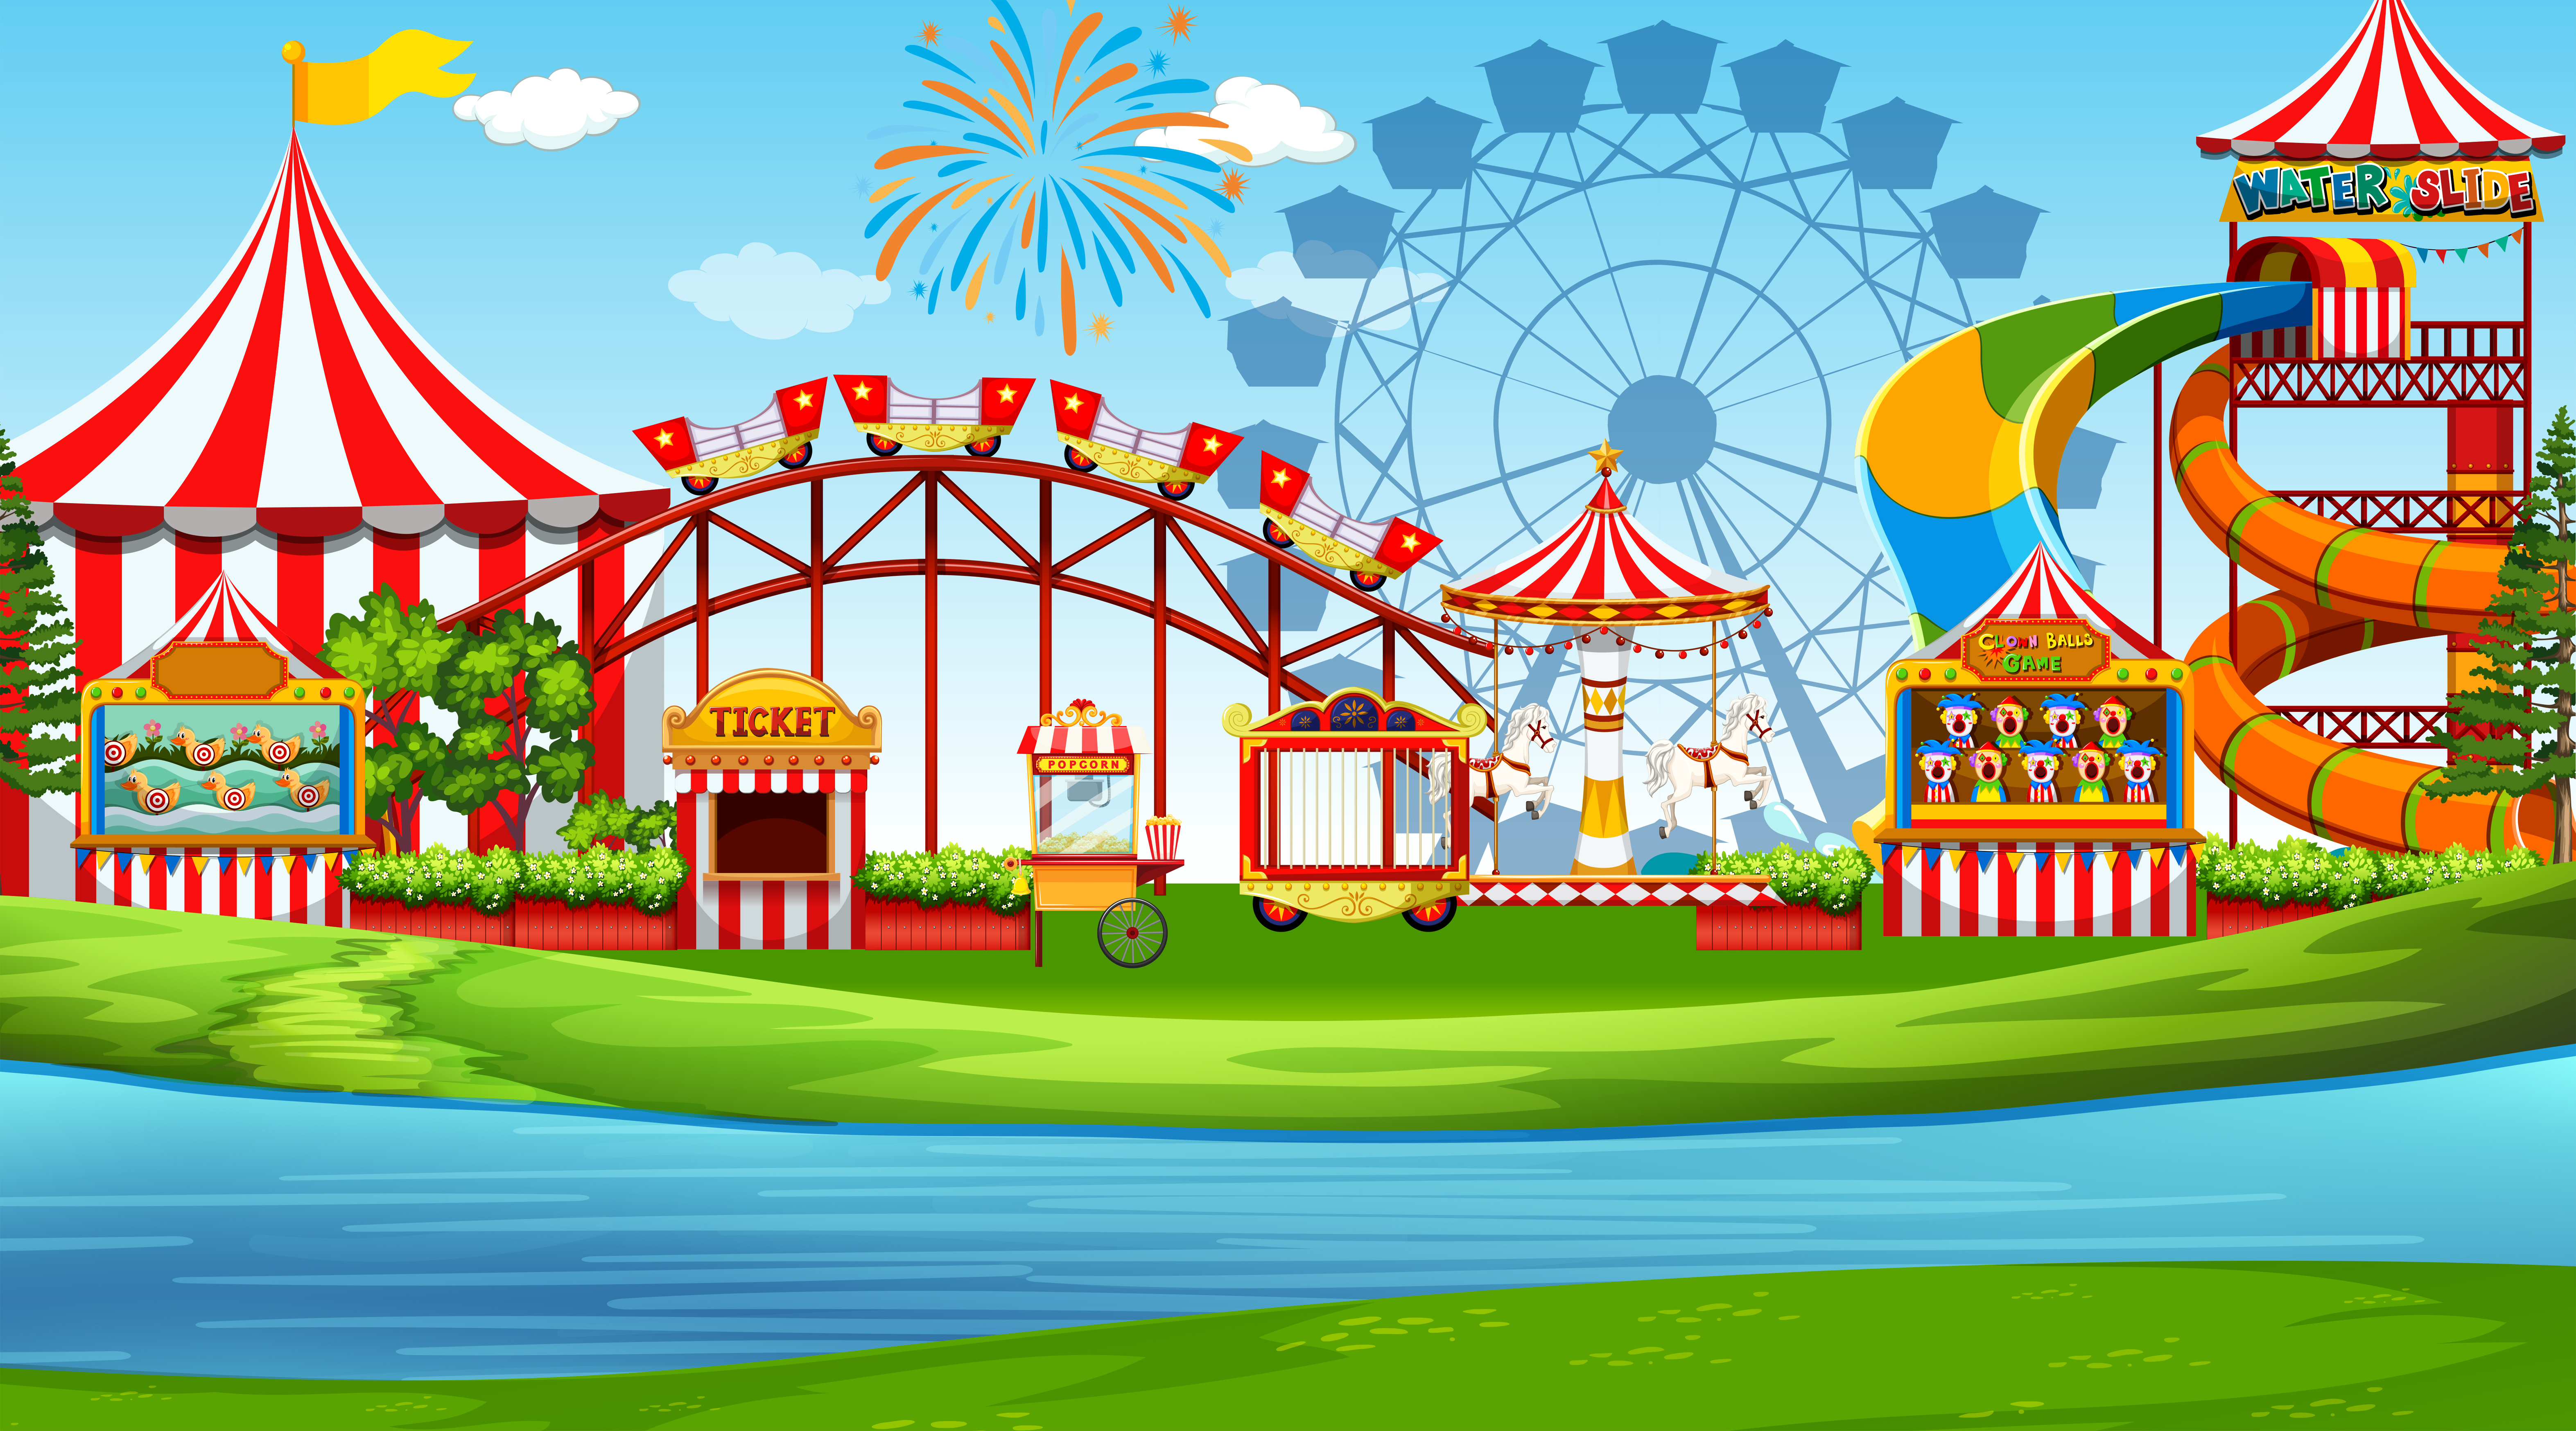 An amusement park scene 669172 Vector Art at Vecteezy